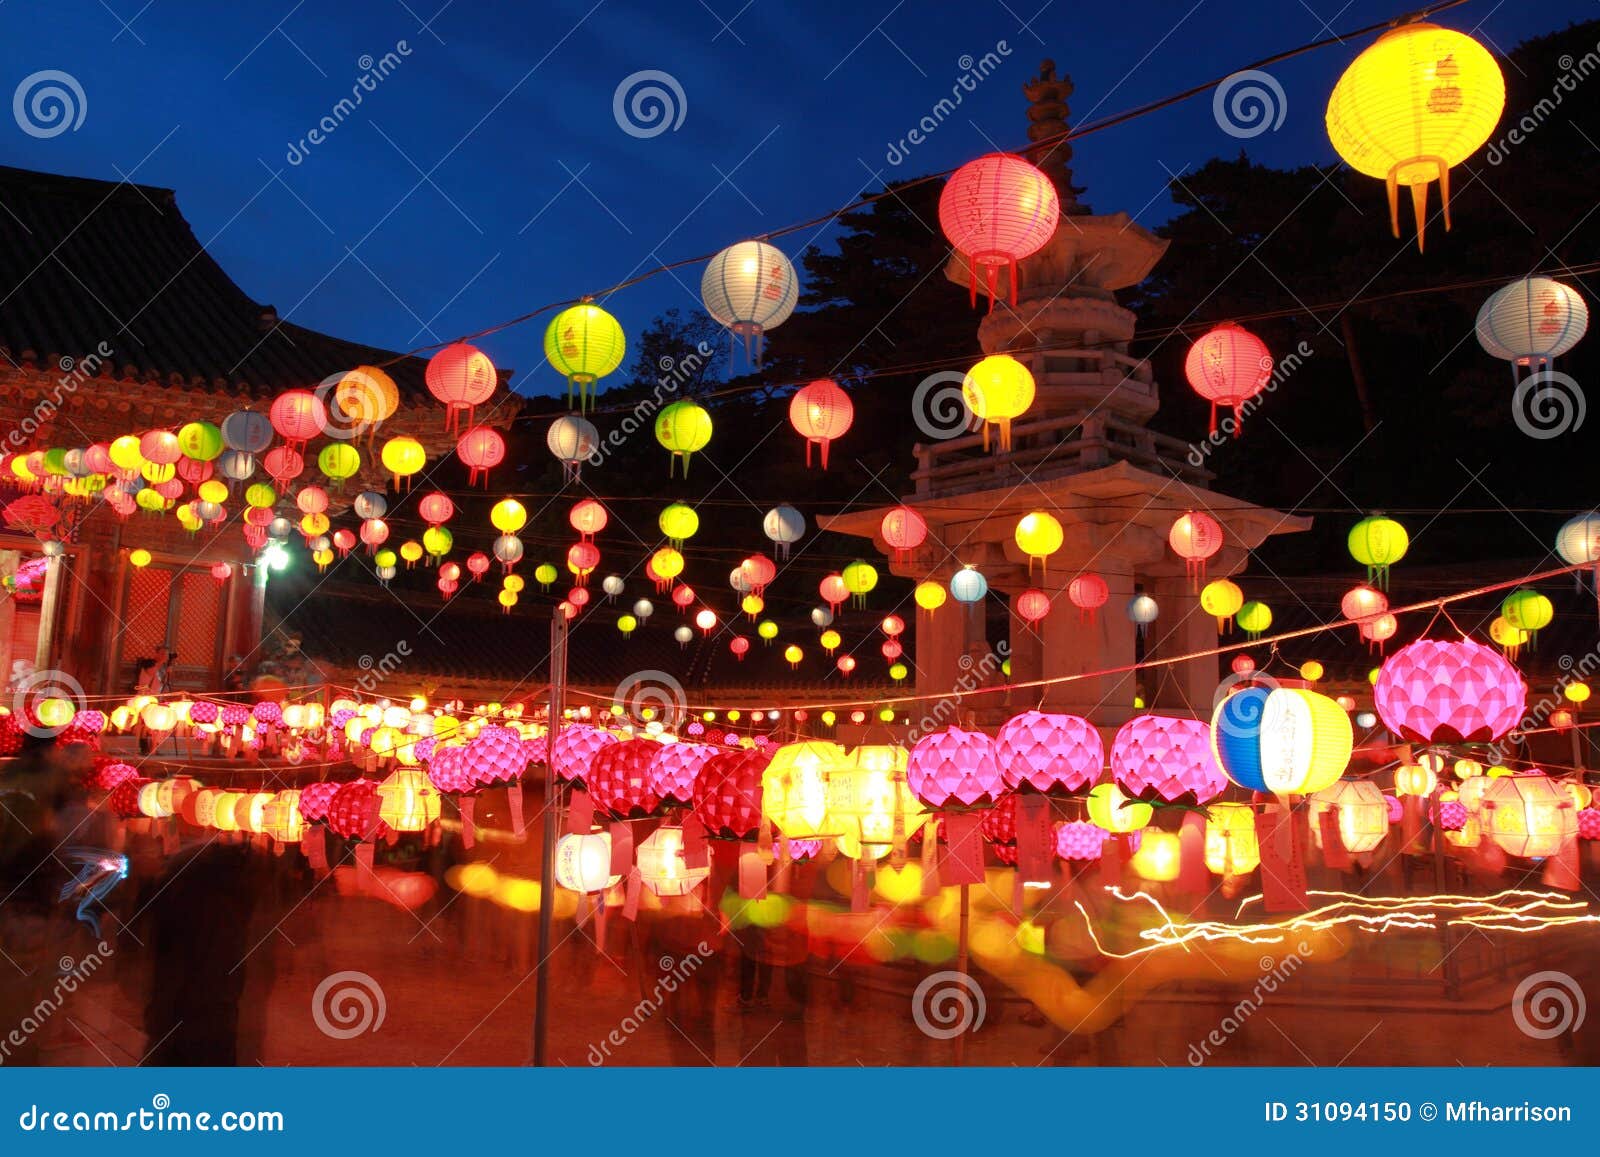 buddhas birthday lantern parade, south korea